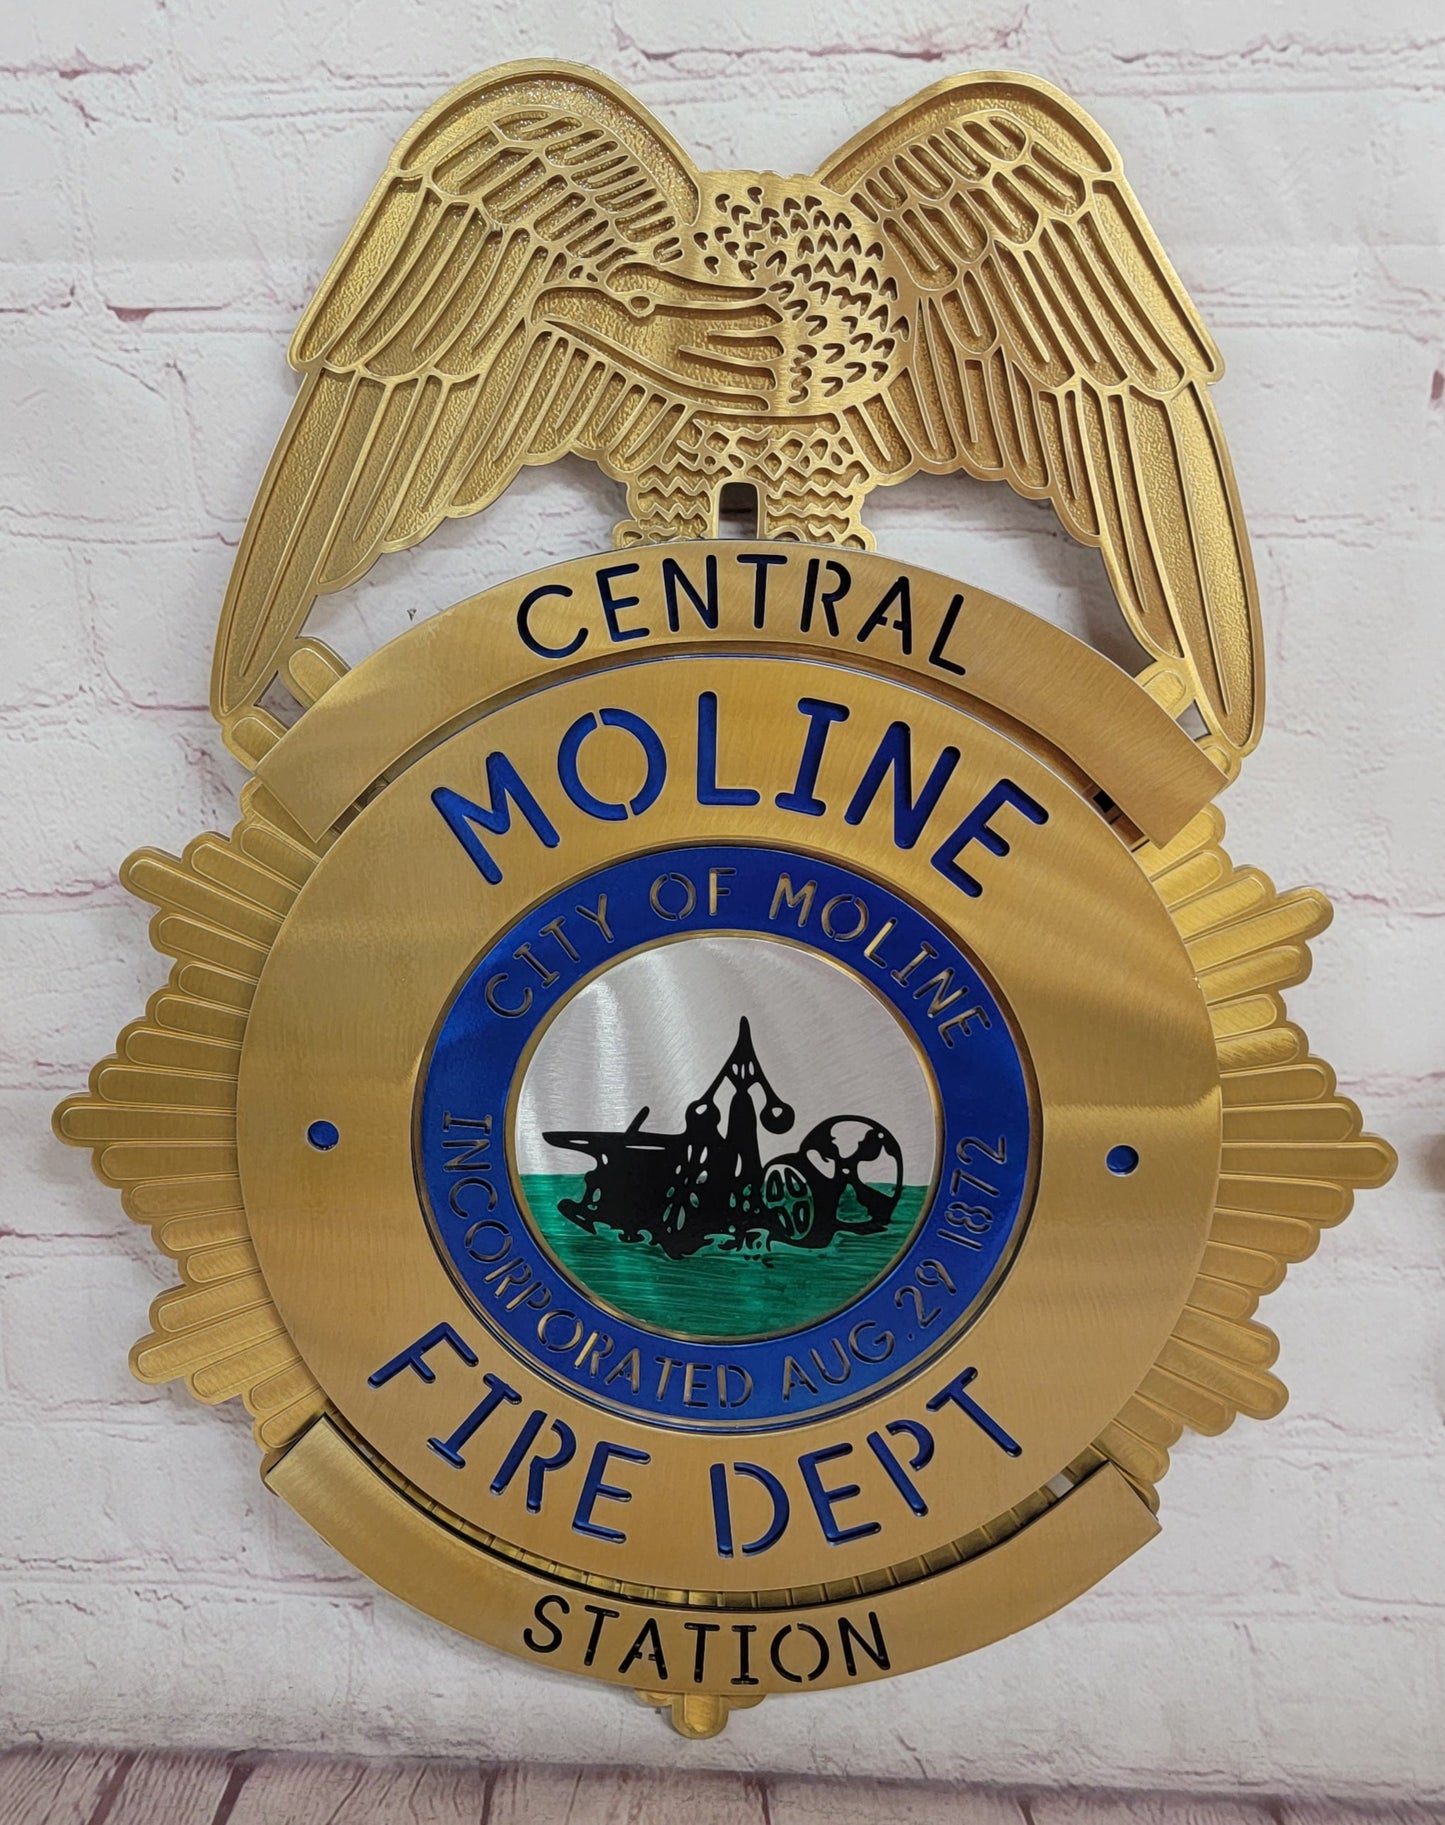 Central Moline Fire Dept.